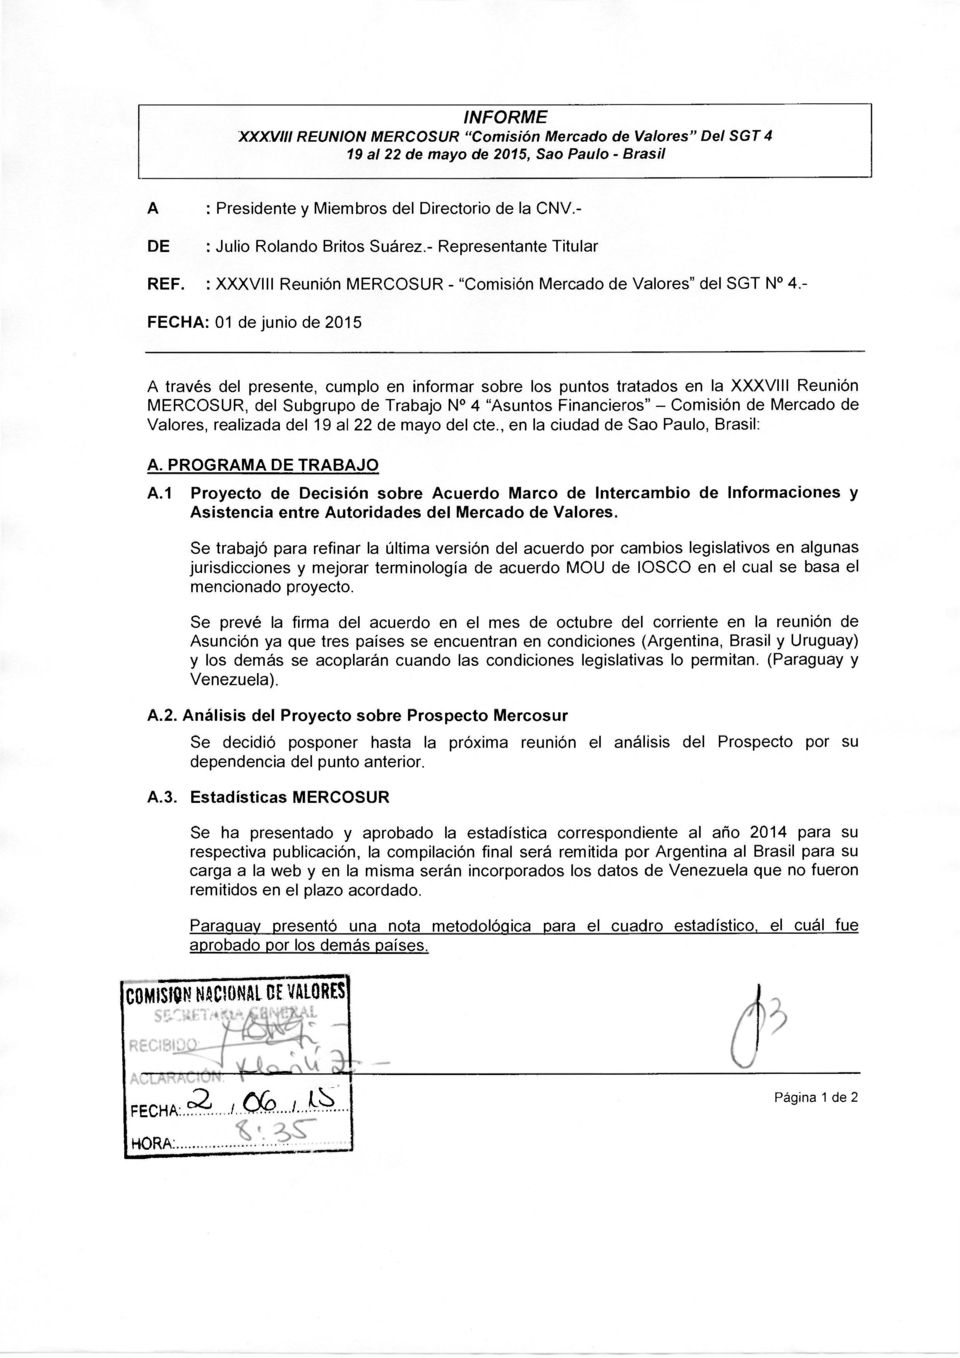 - FECHA: 01 de junio de 2015 A través del presente, cumplo en informar sobre los puntos tratados en la XXXVIII Reunión MERCOSUR, del Subgrupo de Trabajo N 4 "Asuntos Financieros" - Comisión de